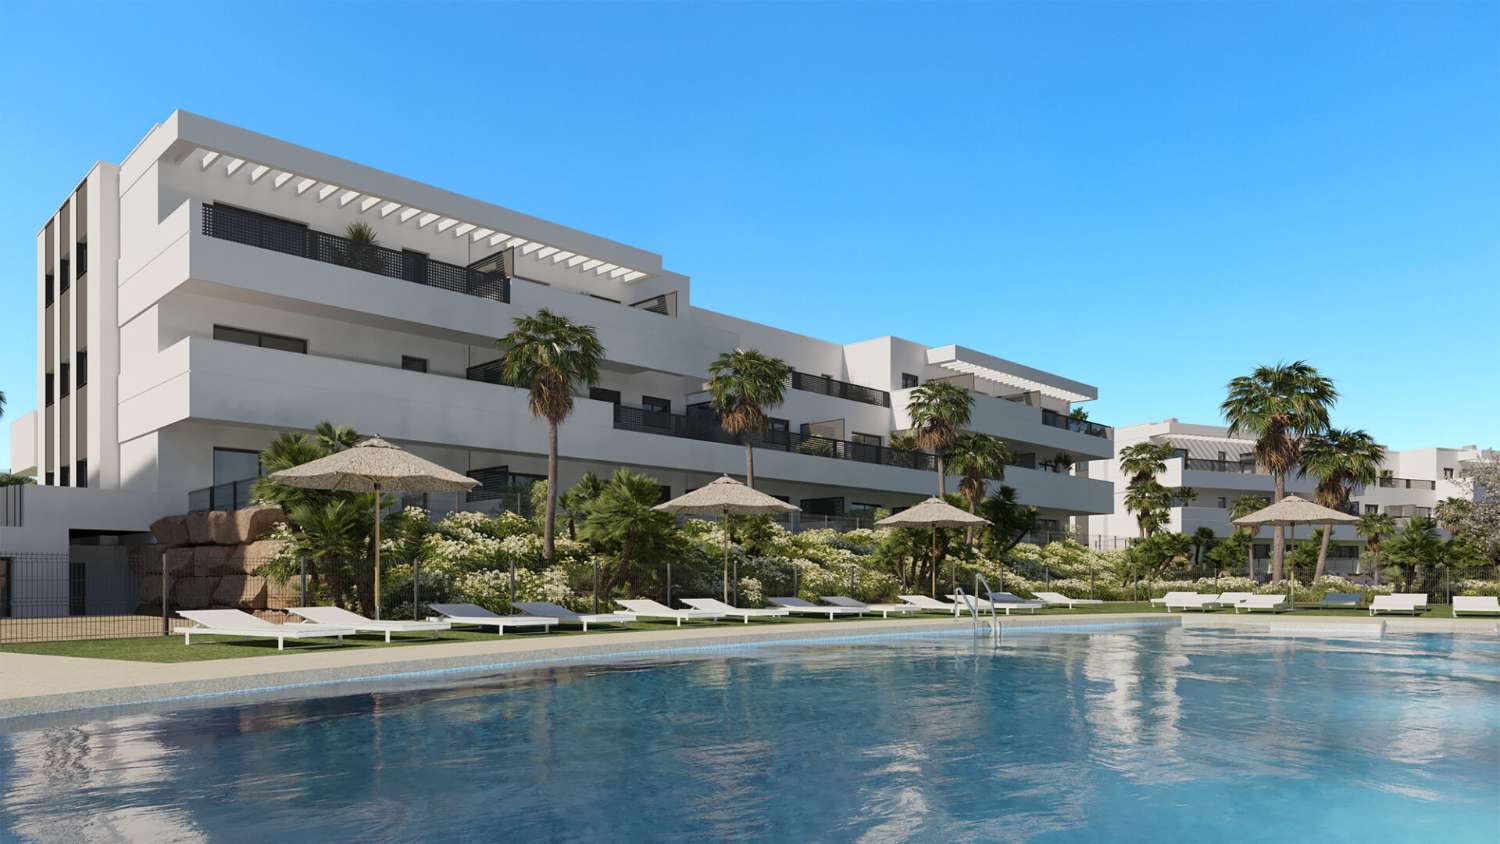 Nieuwbouw . Woningen te koop vanaf €230,000 in Estepona. Appartement met tuin en eerste verdieping.